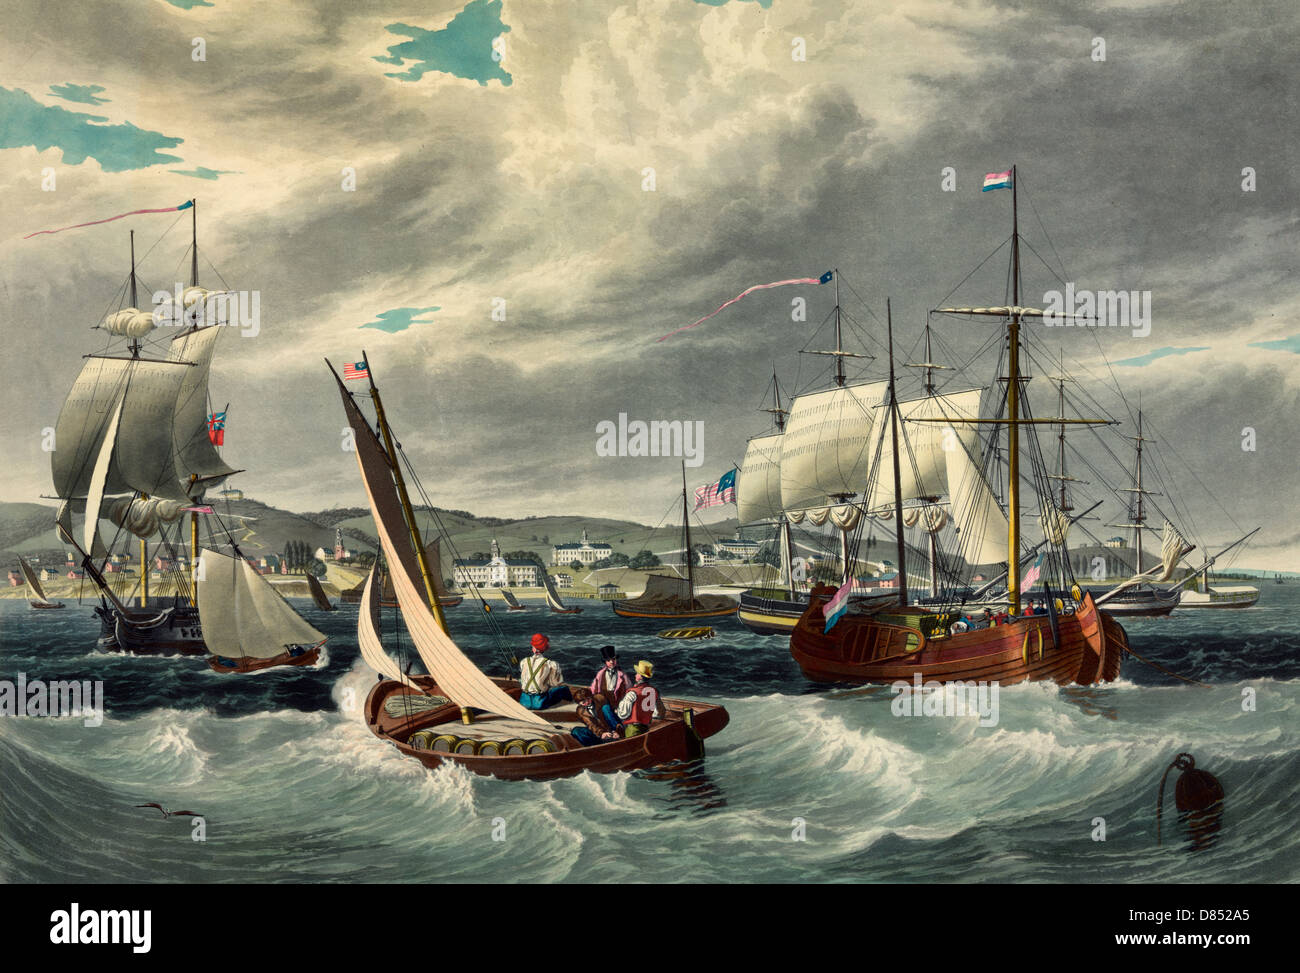 Vue de la quarantaine de New York, Staten Island. Navires et bateaux au large de la station de quarantaine de New York à Staten Island, vers 1833 Banque D'Images